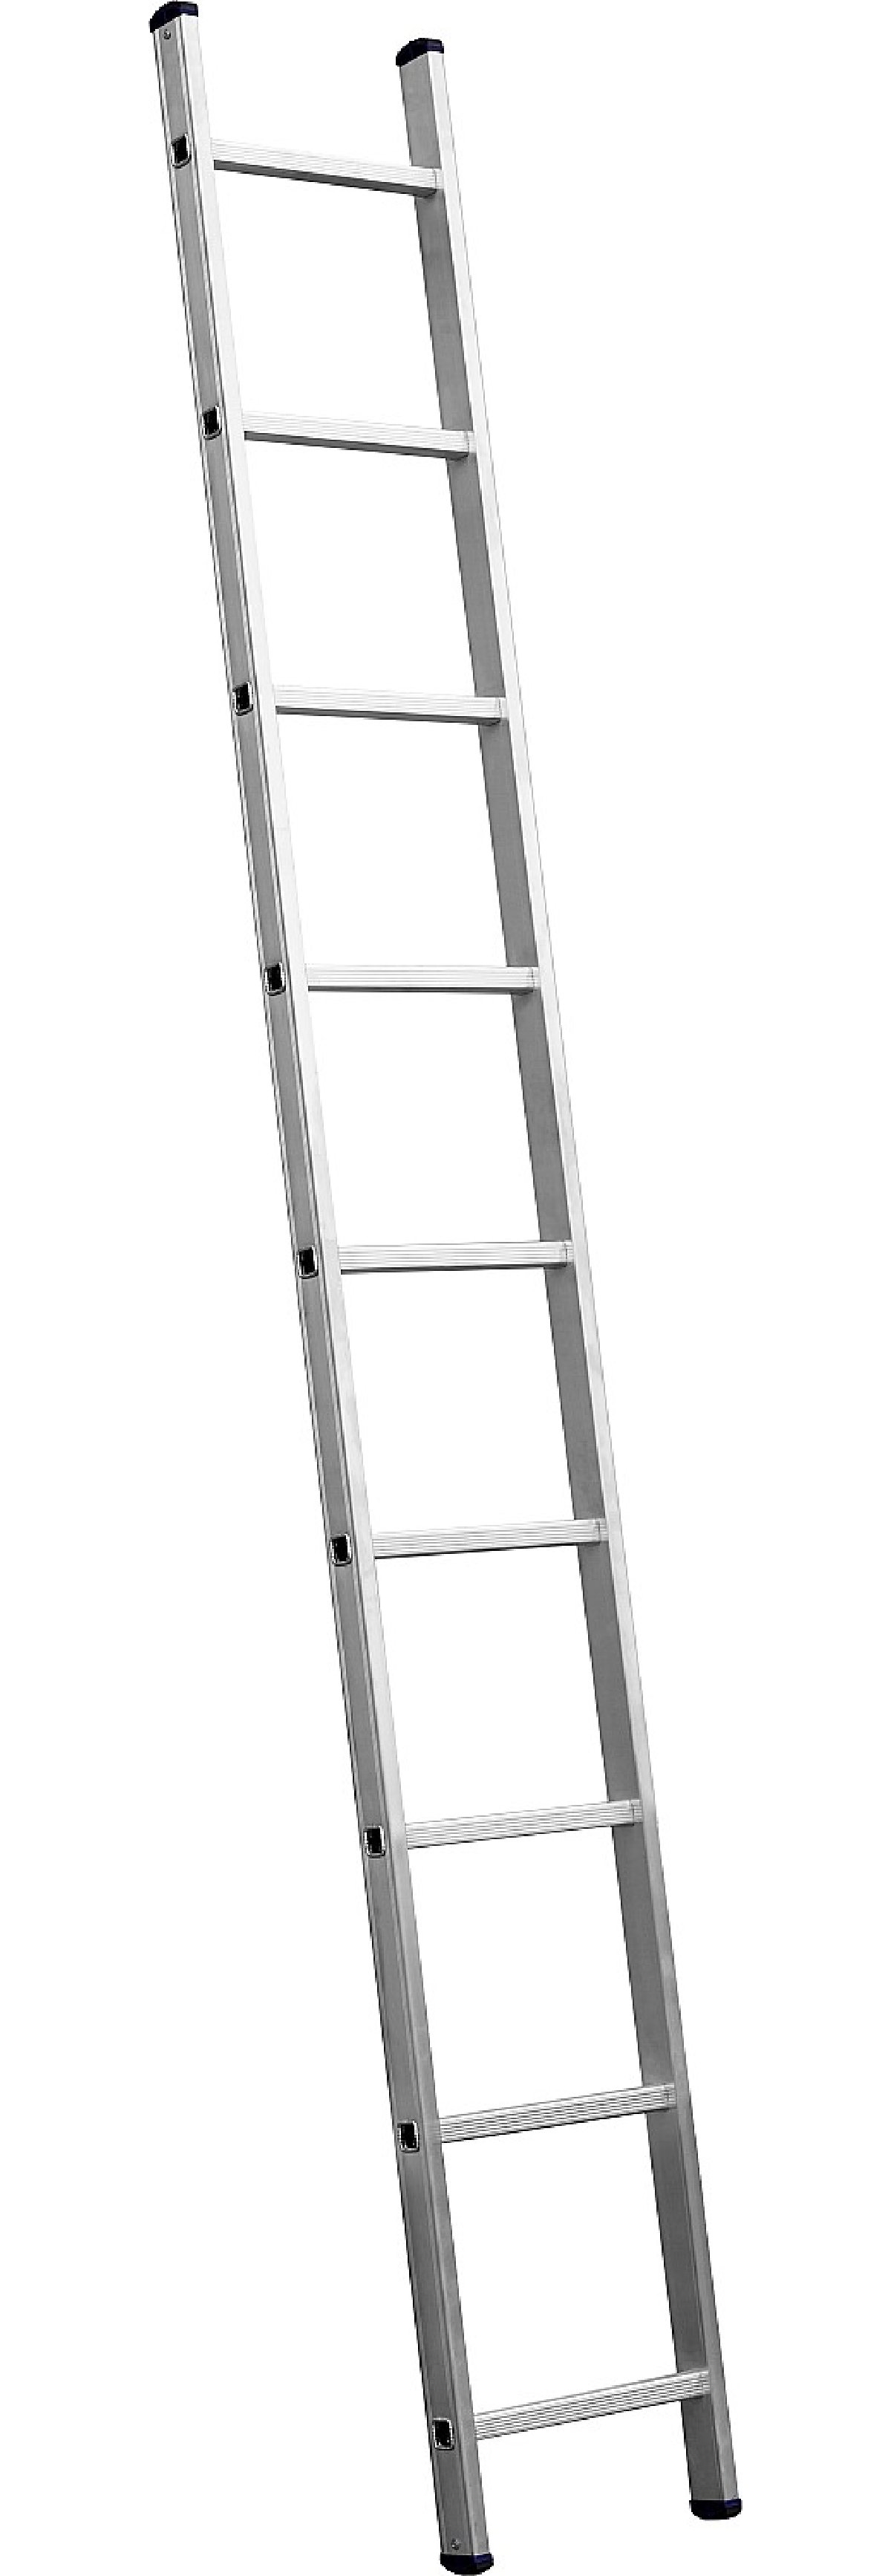 Приставная лестница СИБИН, односекционная, алюминиевая, 9 ступеней, высота 251 см, (38834-09)